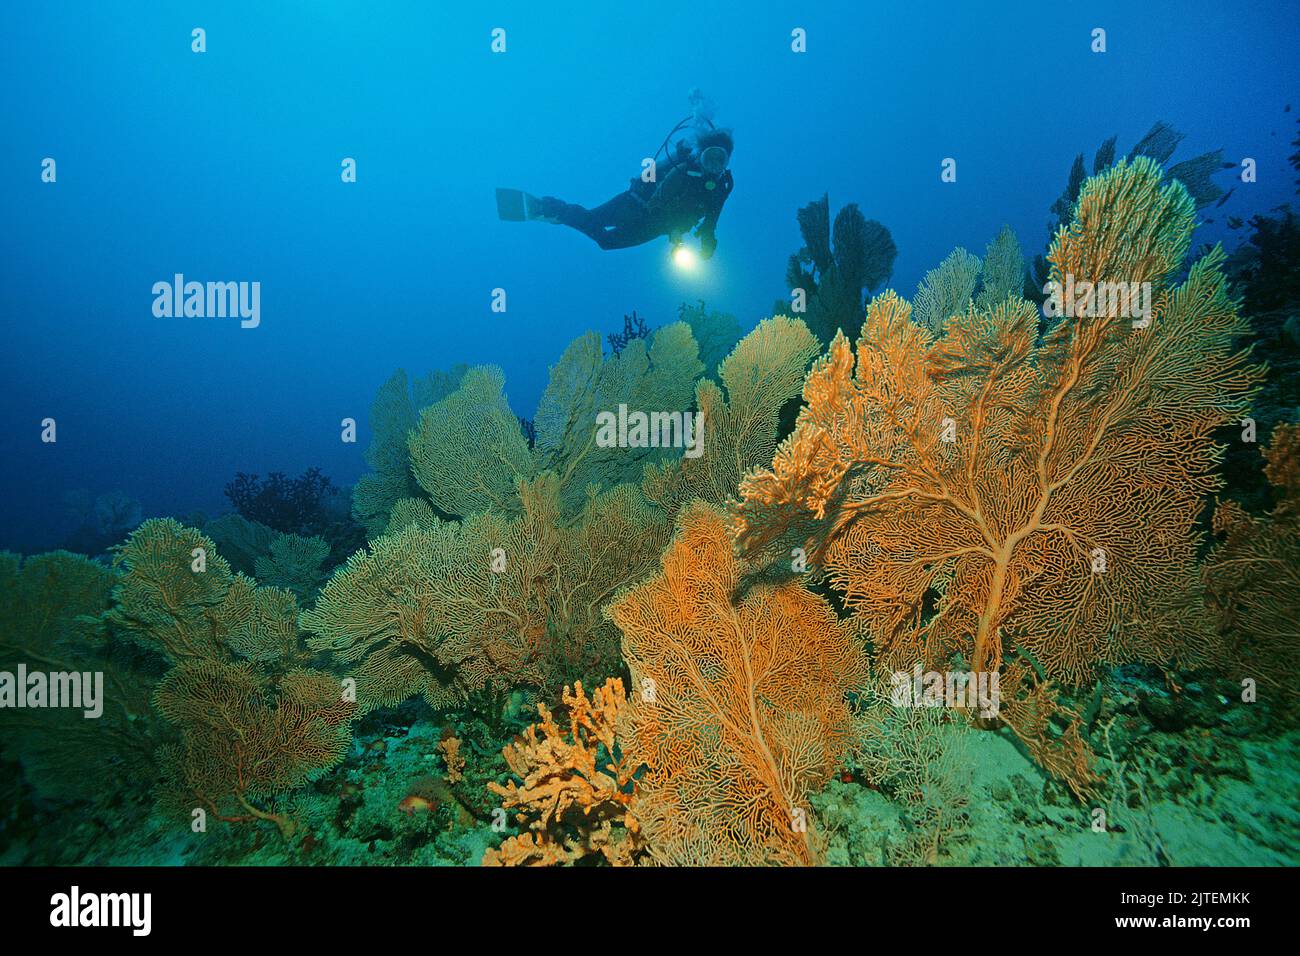 Plongée sous-marine dans un récif de corail avec des fans de la mer Giant (Annella mollis), Maldives, Océan Indien, Asie Banque D'Images